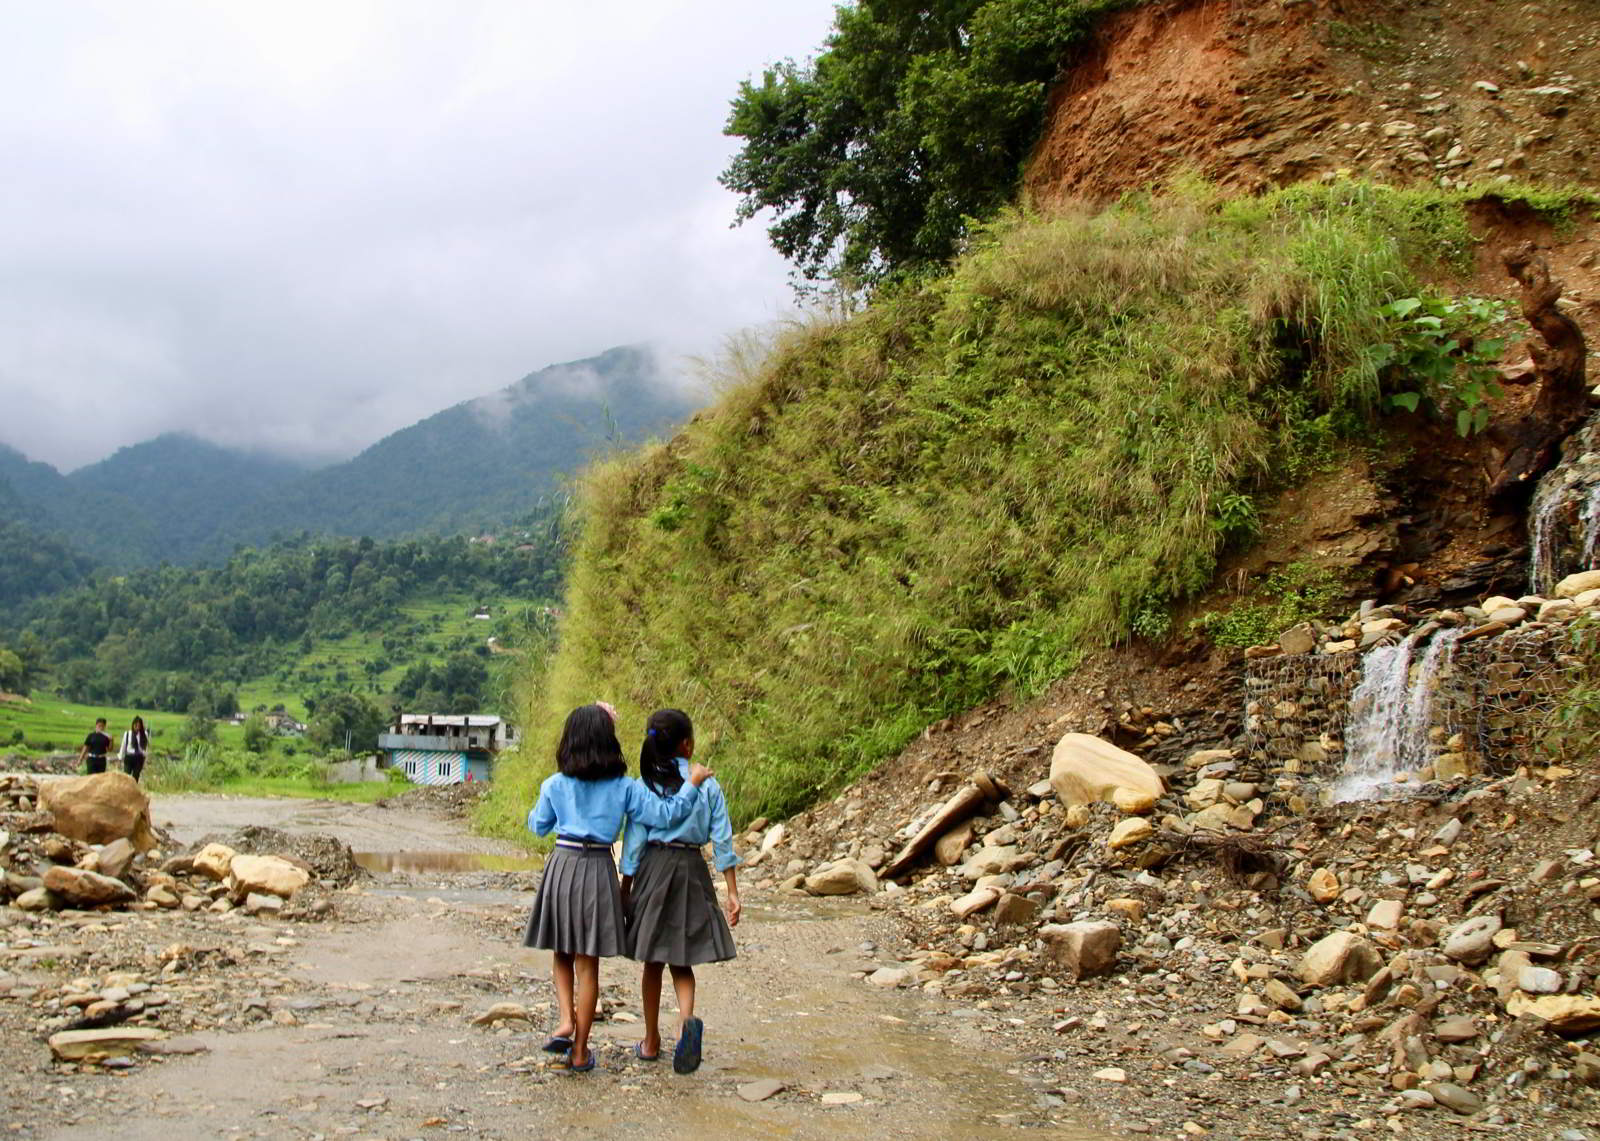 Two girls walking along a path in Nepal